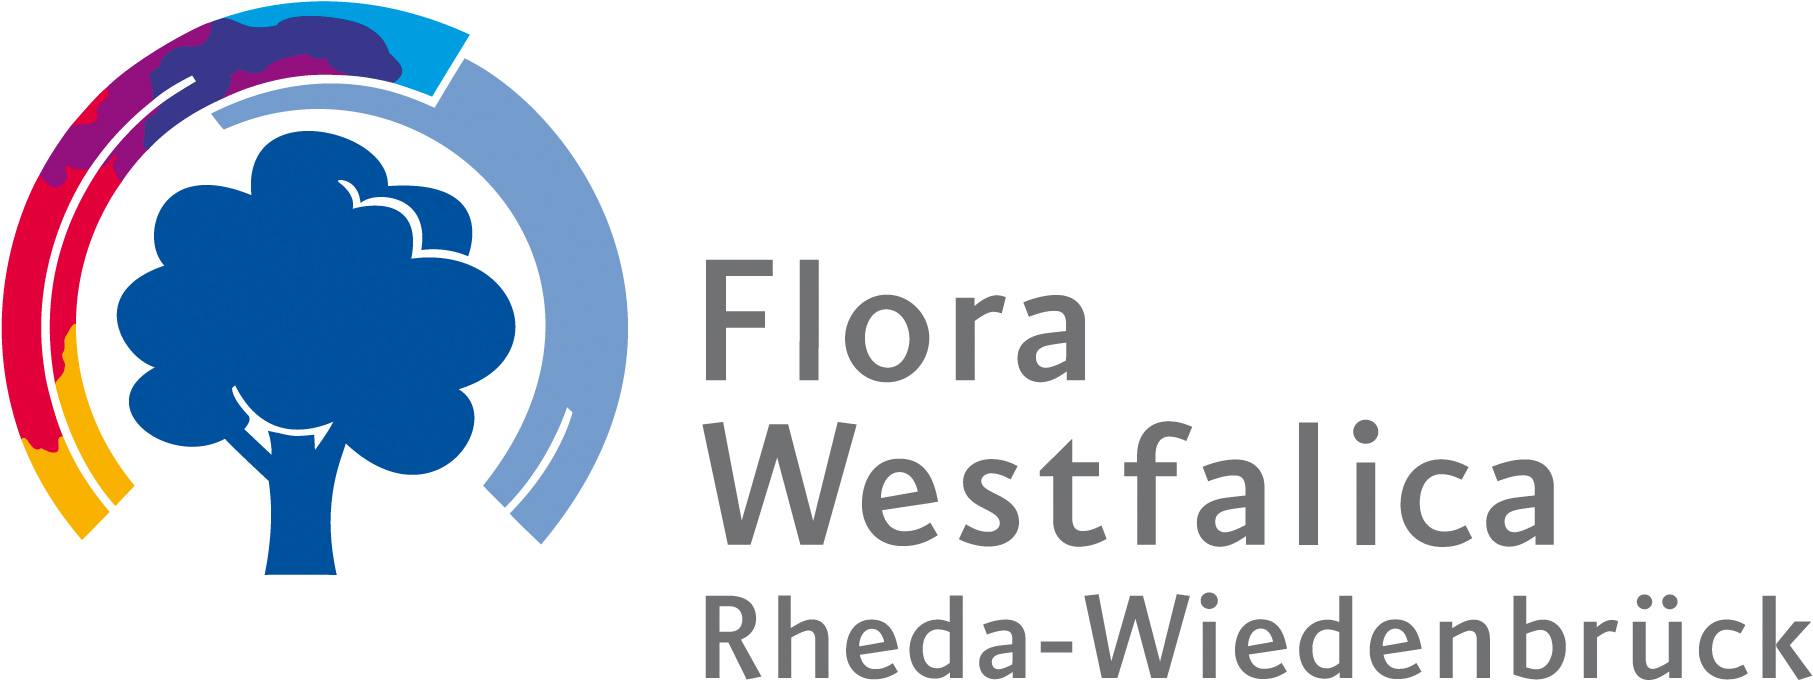 Flora Westfalica -FGS- Fördergesellschaft Wirtschaft und Kultur mbH Rheda-Wiedenbrück